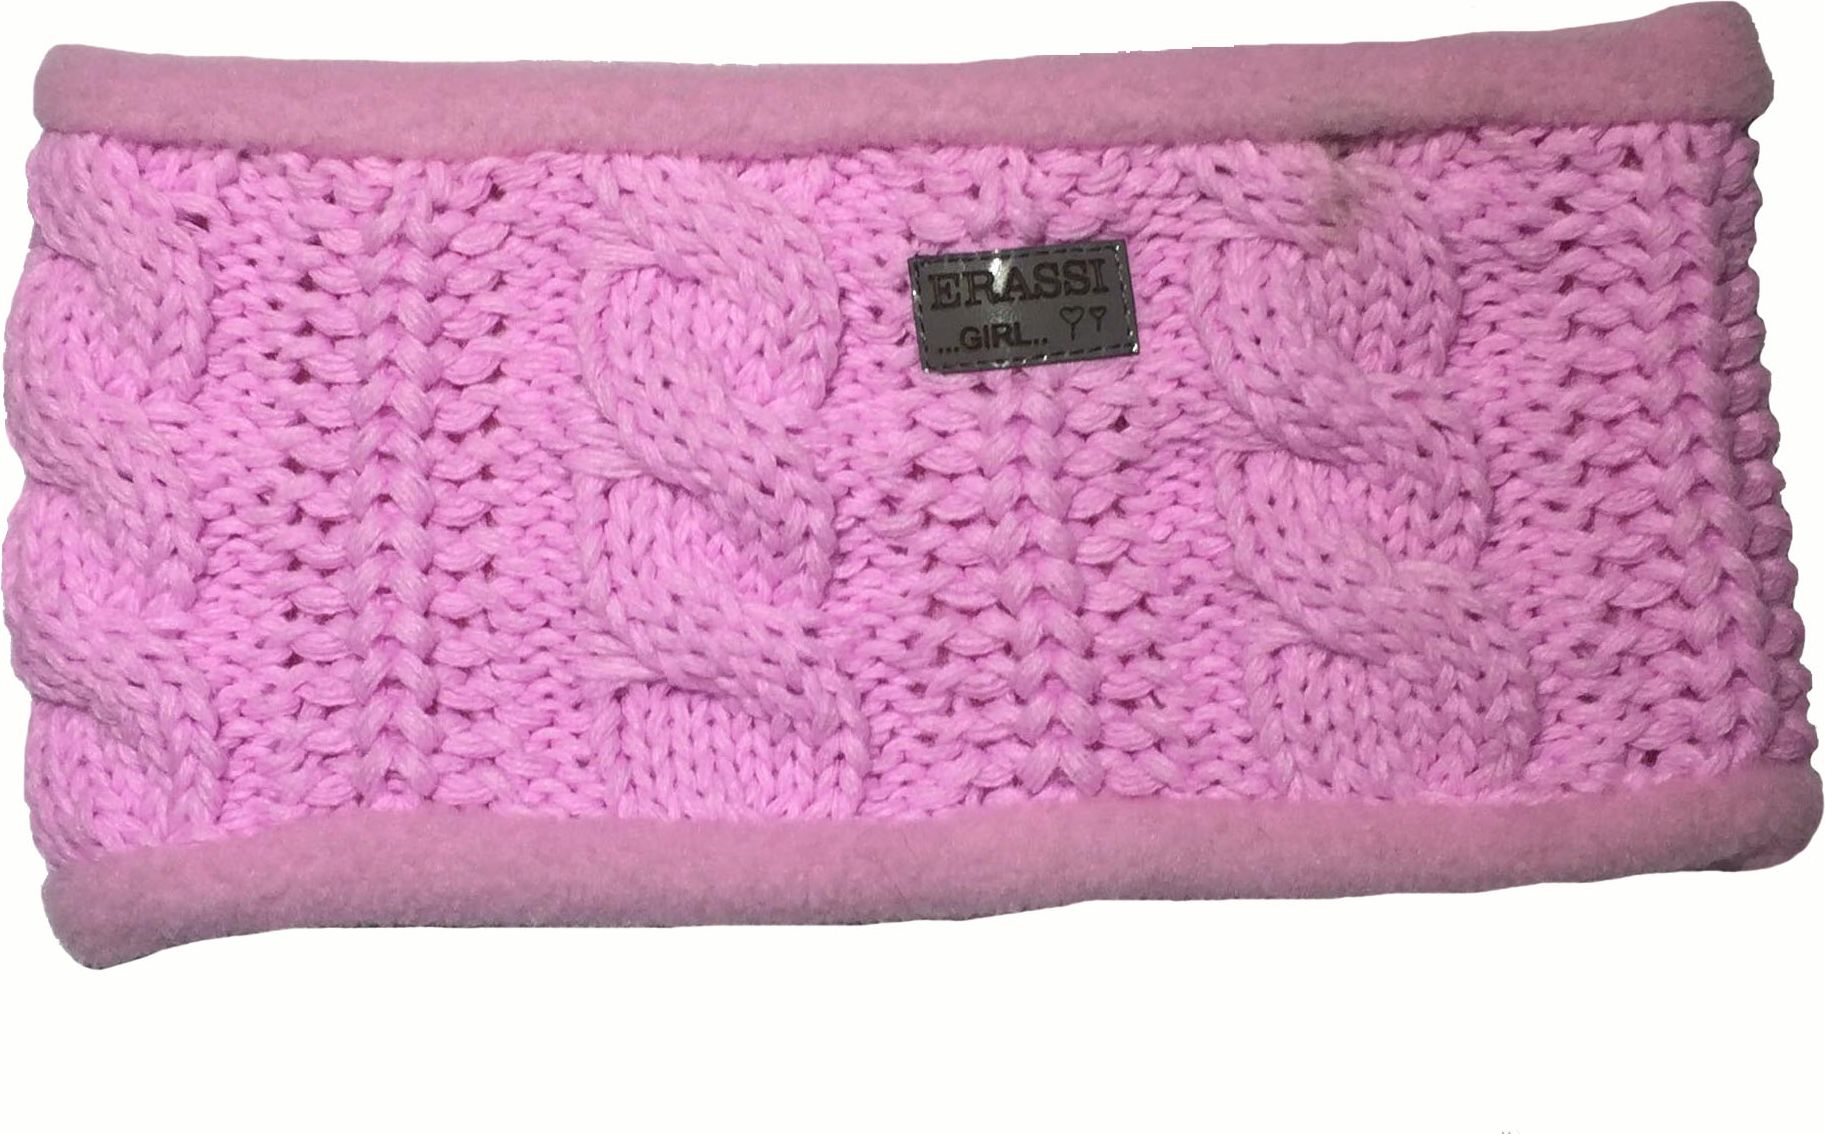 erassi Dívčí pletený nákrčník růžový - obrázek 1